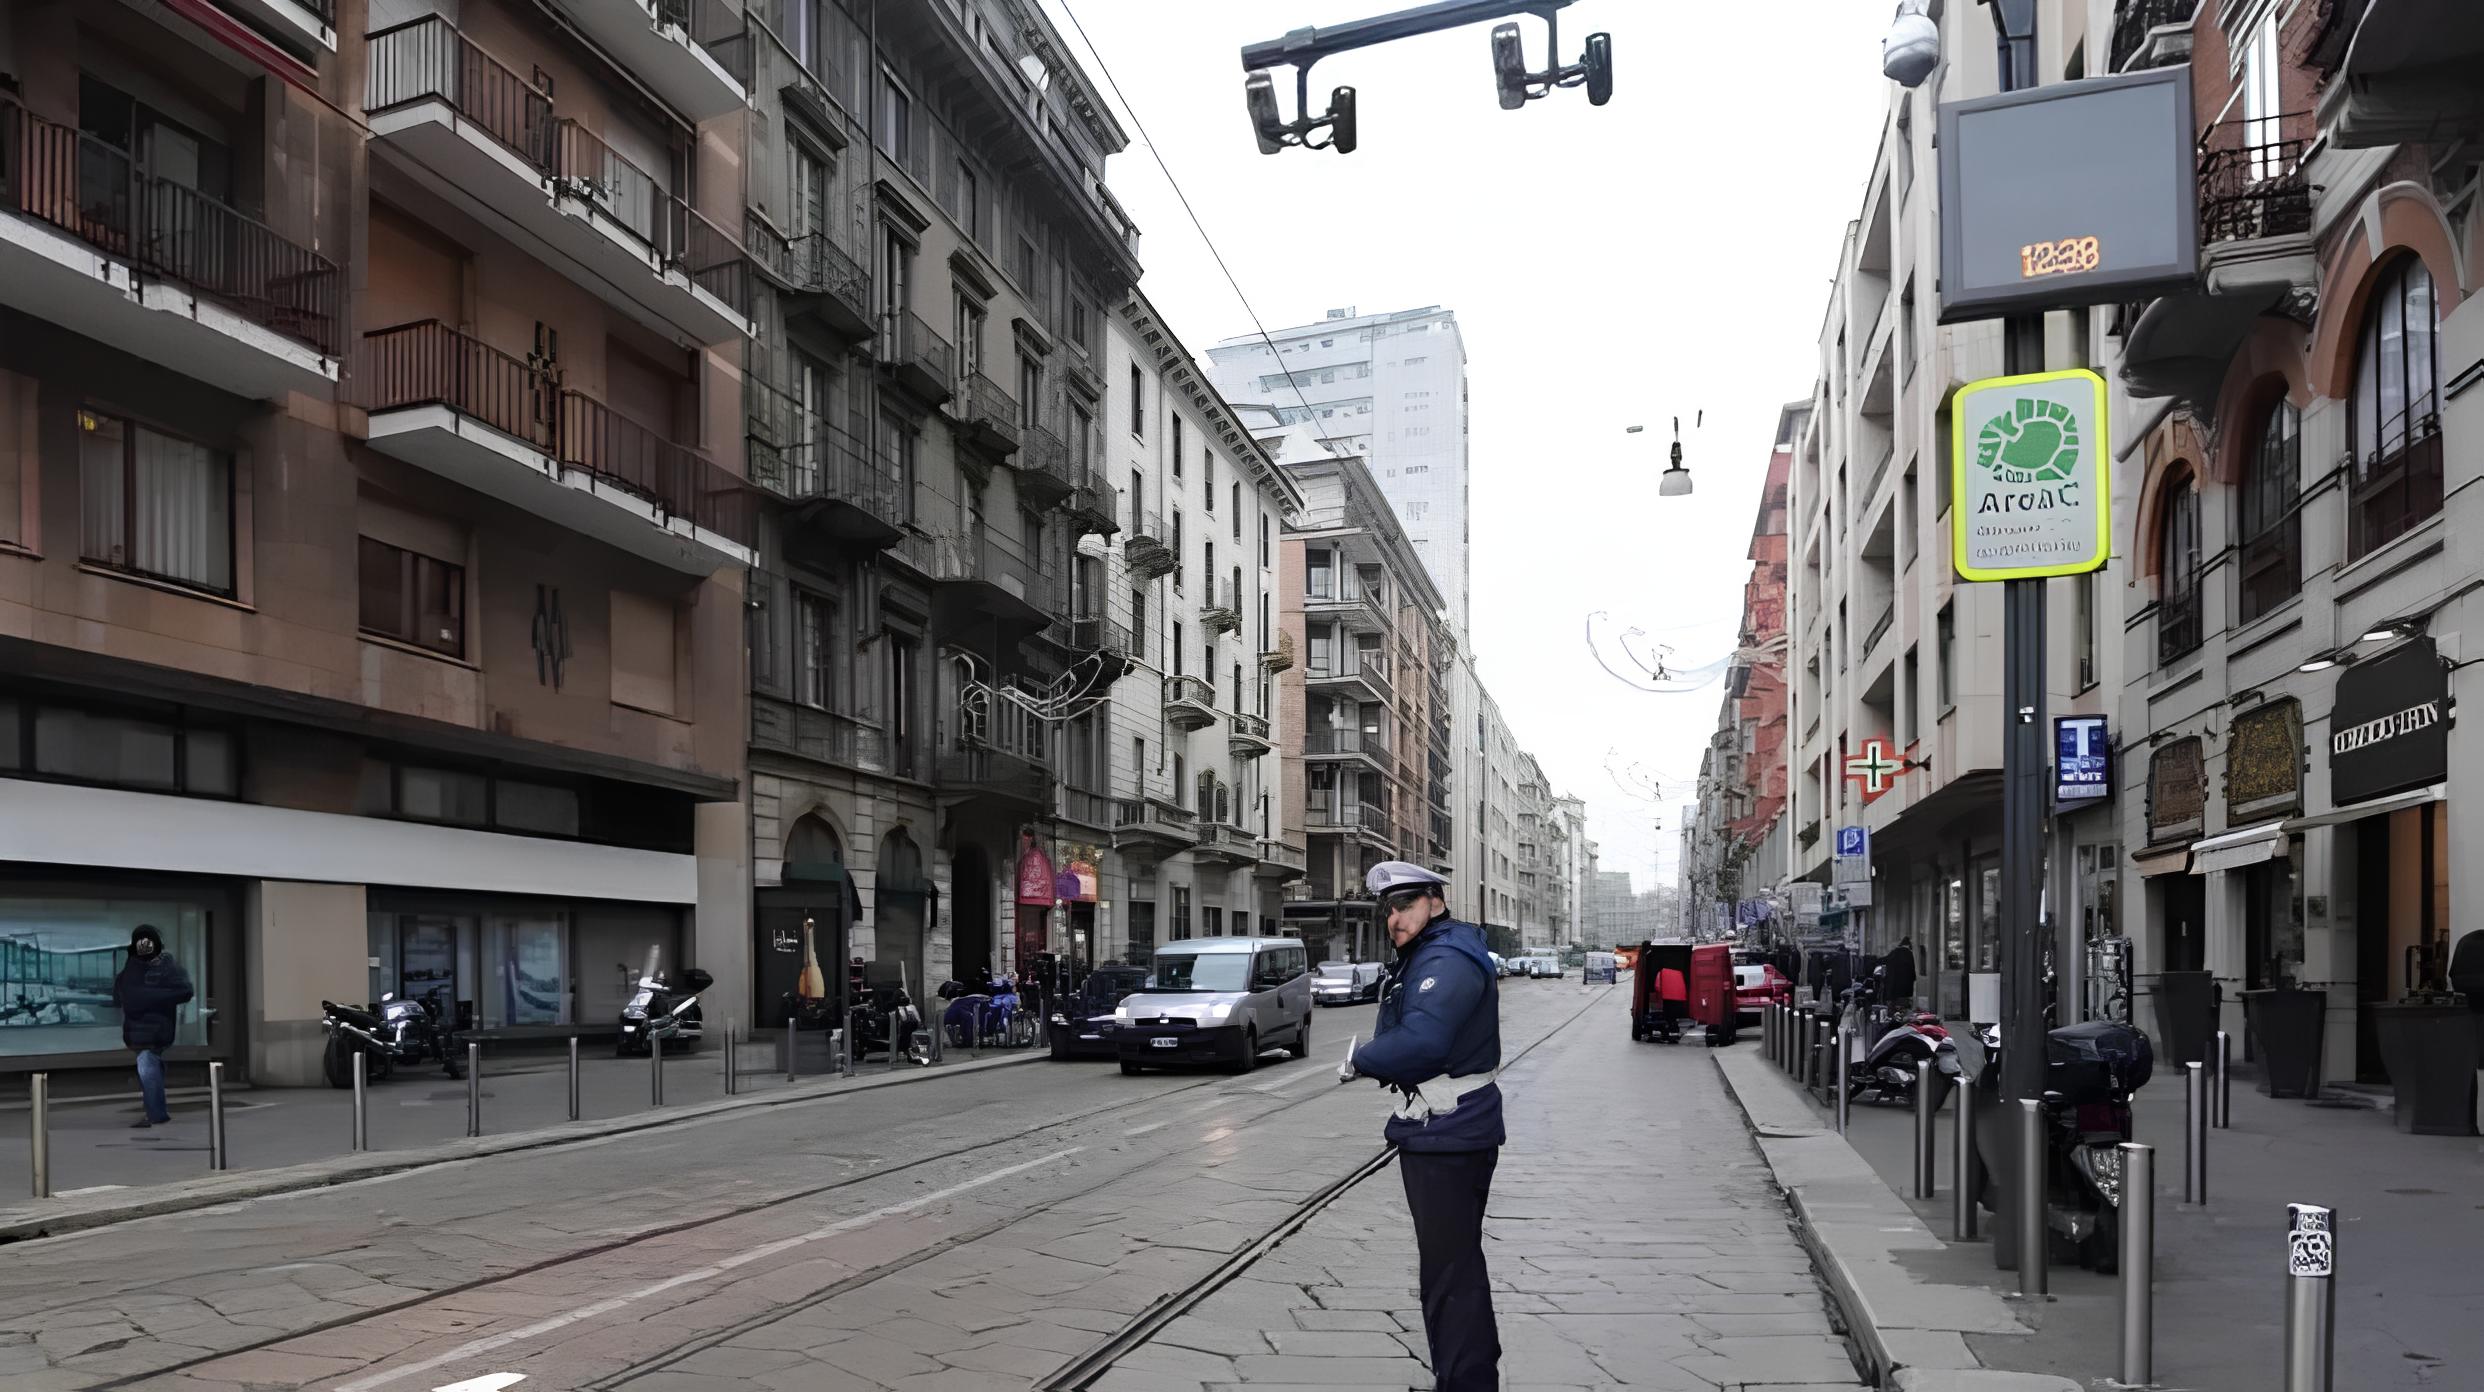 Aarea C Milano: rincaro ticket di accesso e sosta di 2 ore nei parcheggi blu